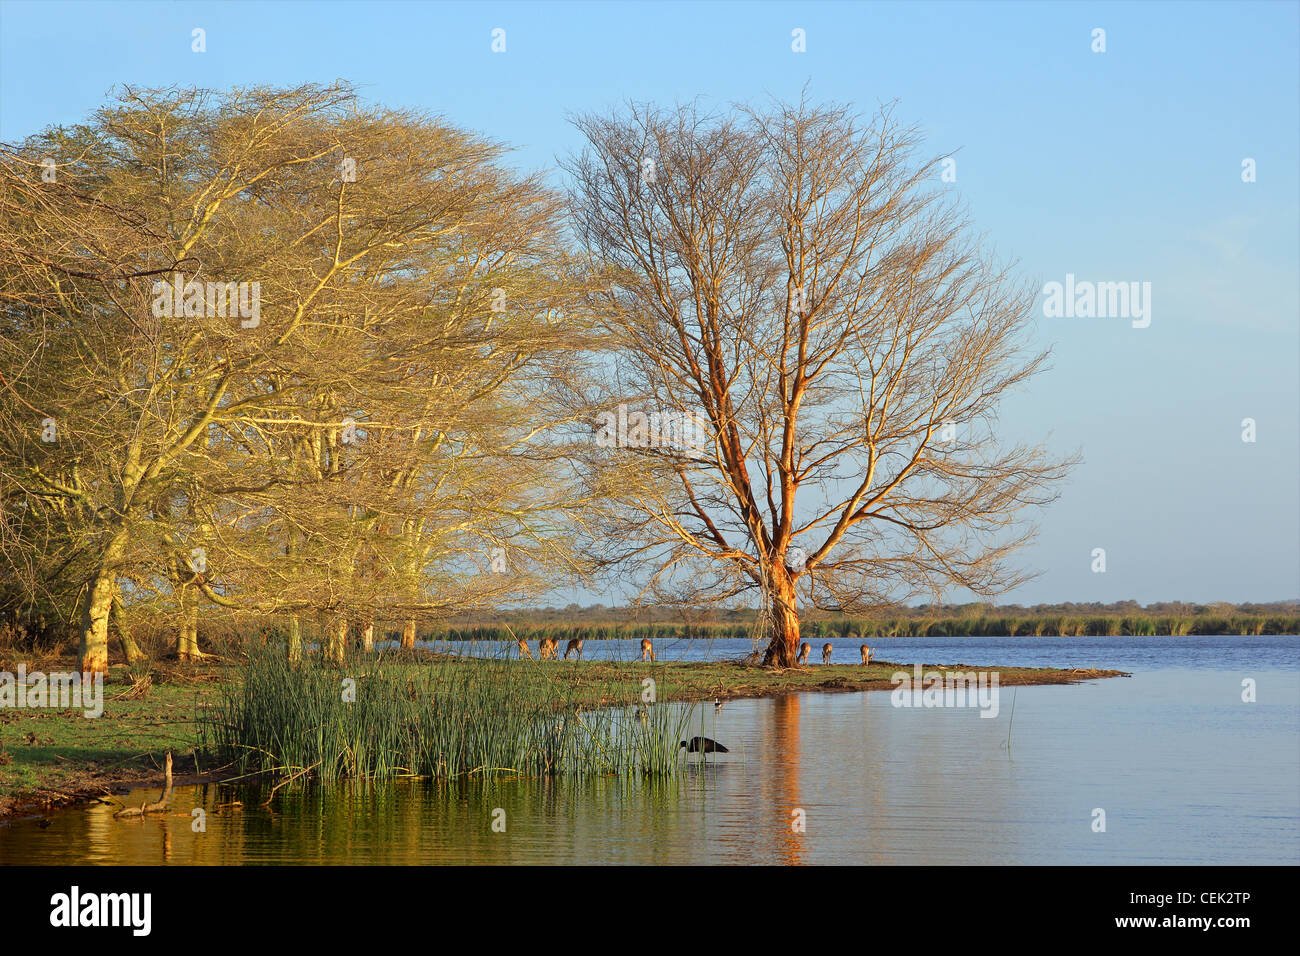 La fièvre des arbres (Acacia) xanthoploea croissant sur le bord d'un lac Mkuze game reserve, Afrique du Sud Banque D'Images